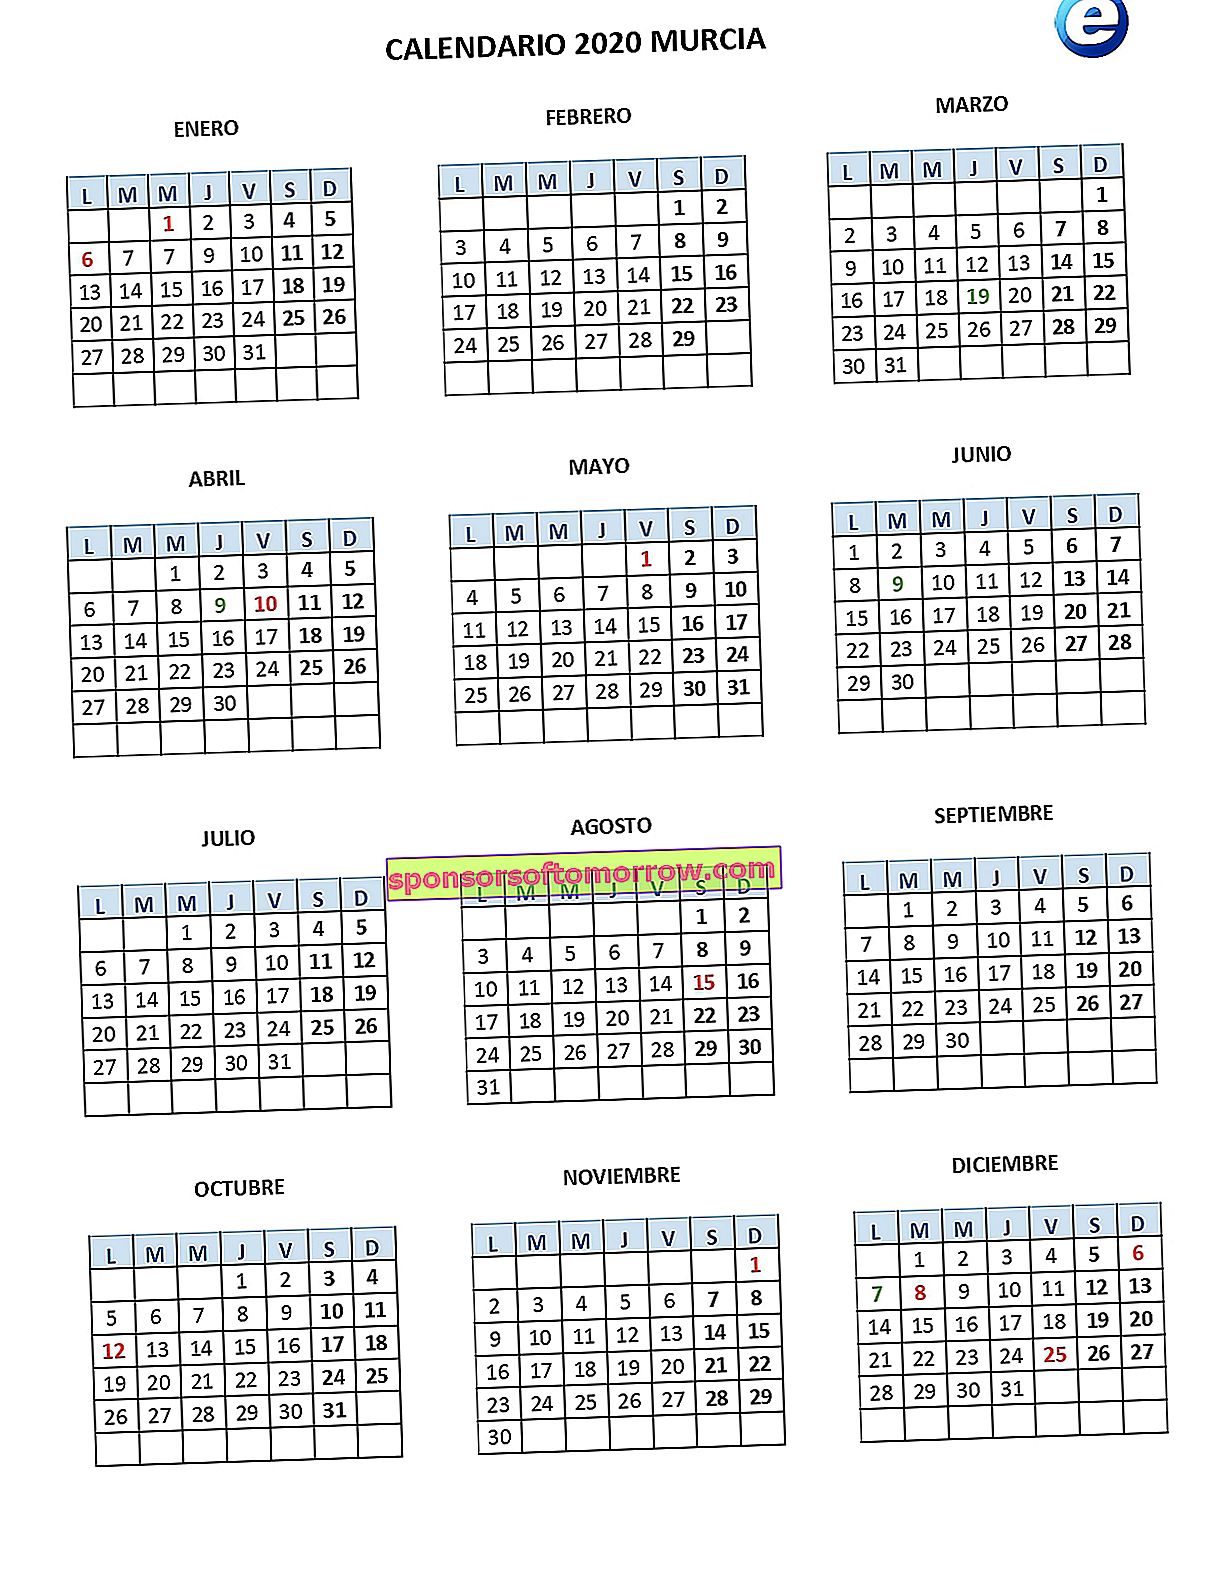 ムルシアカレンダー2020_pages-to-jpg-0001